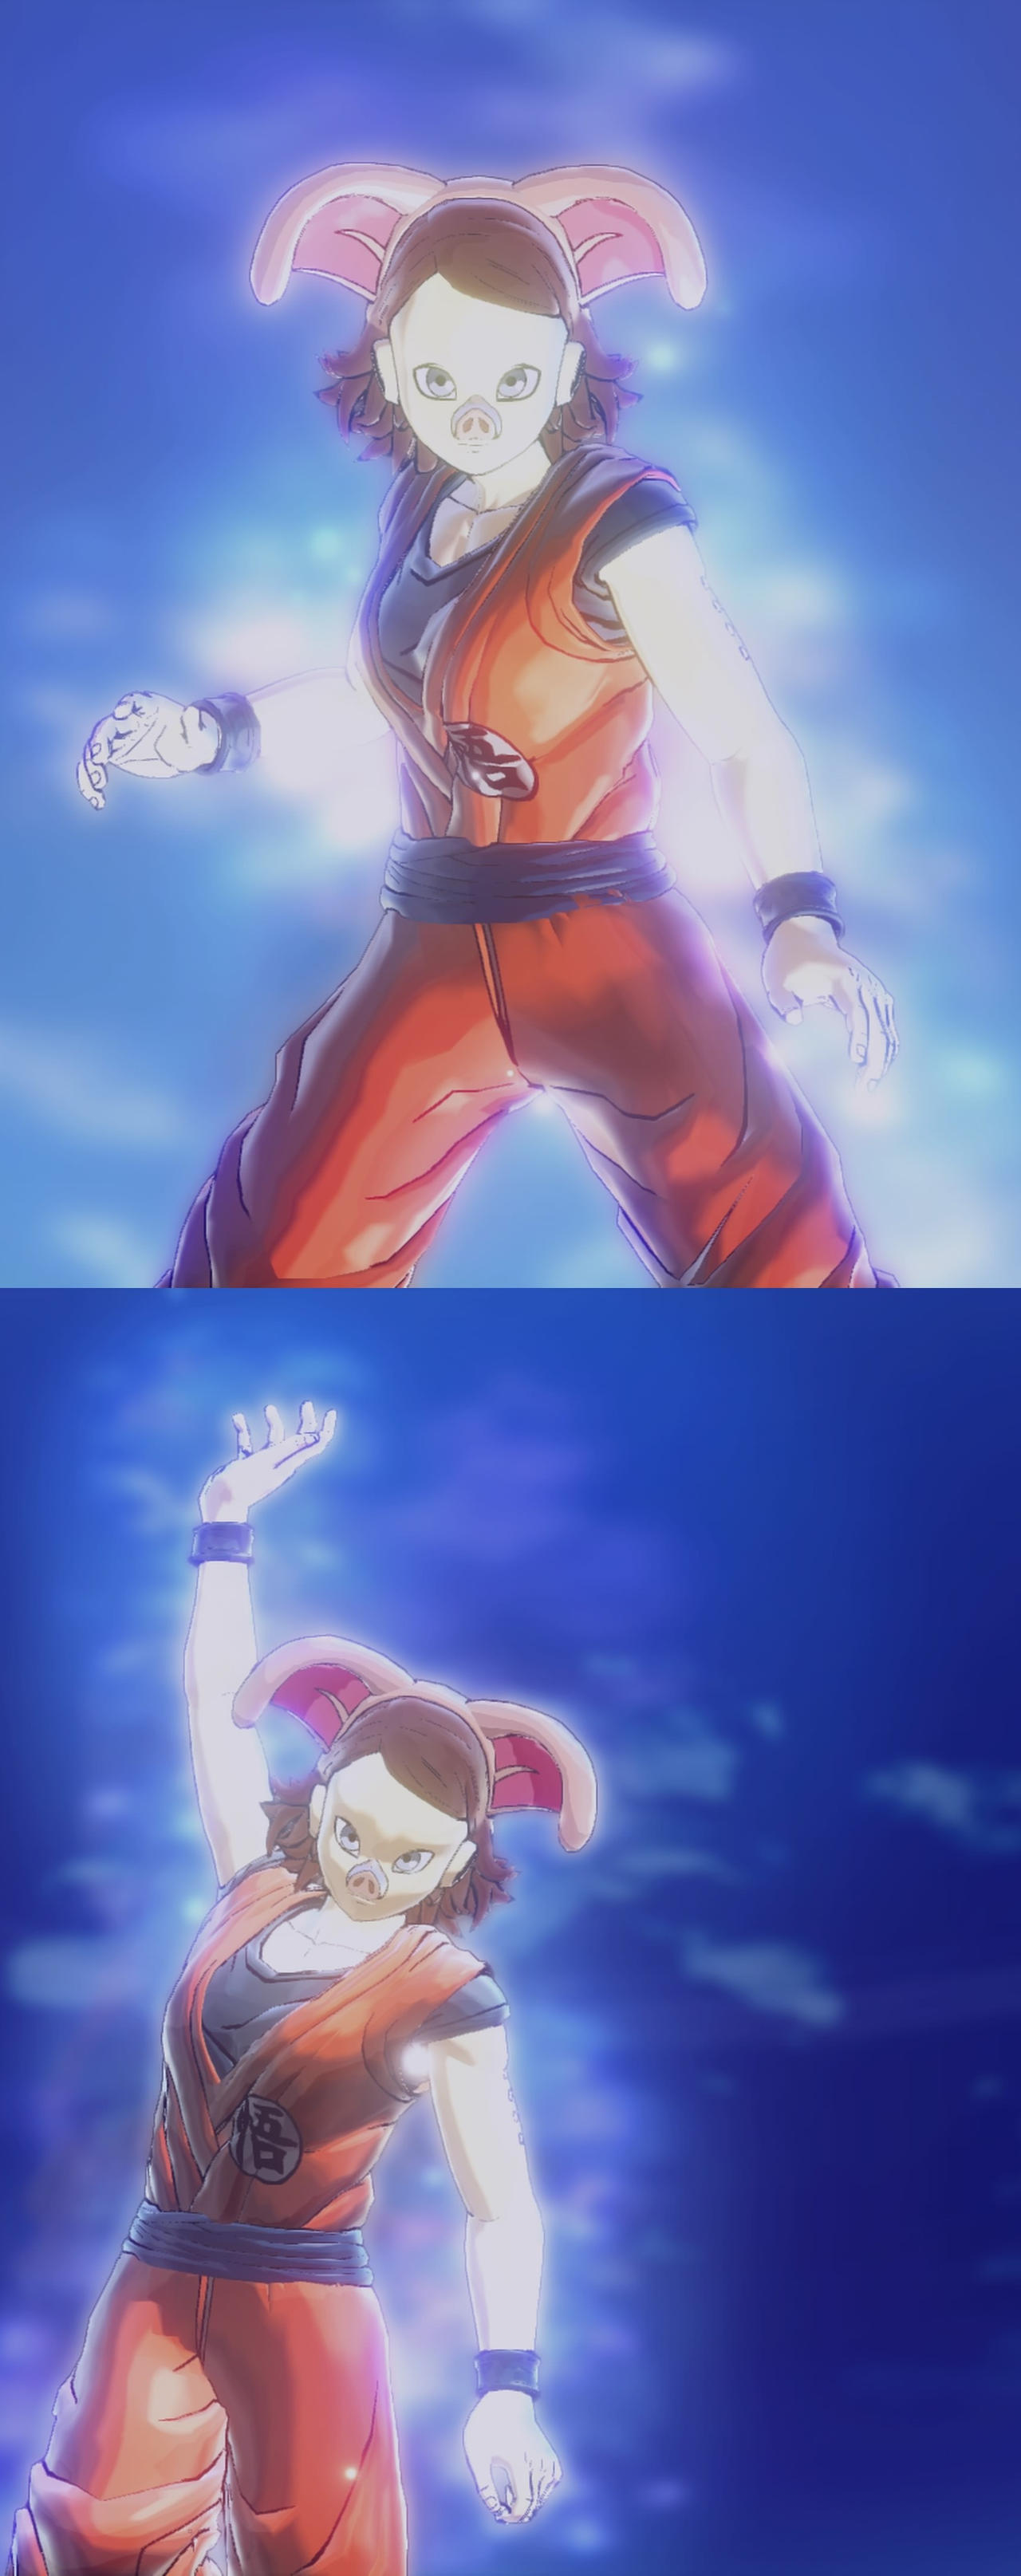 Goku (End) by RuokDbz98  Anime dragon ball, Dragon ball art, Anime dragon  ball super